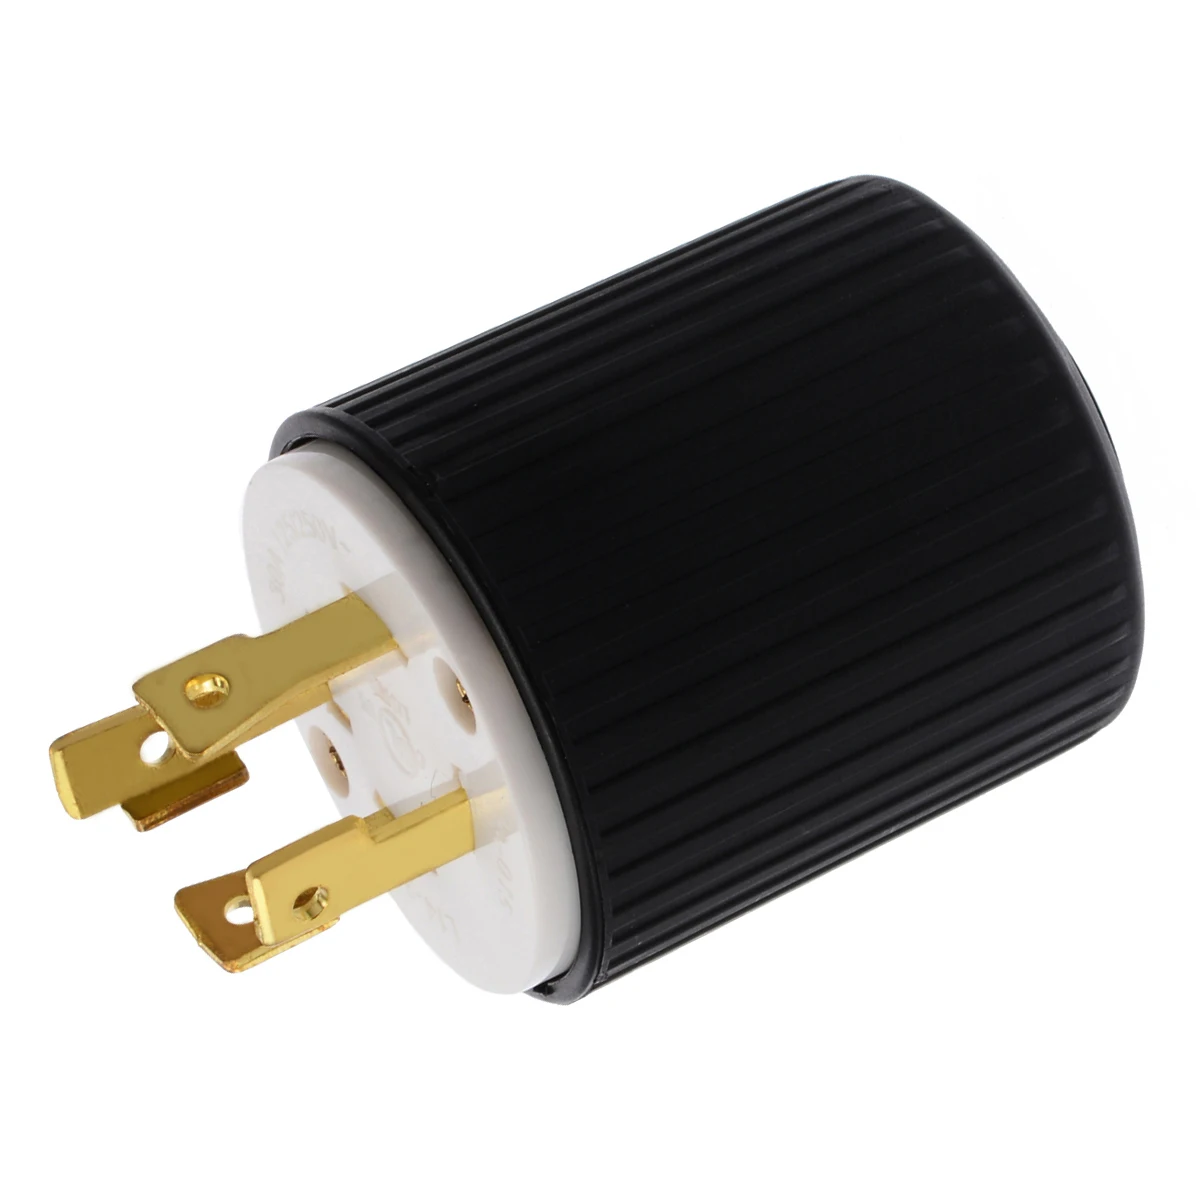 Черный запирающий штекер L14-30 30 Ампер 125/250 Вольт 3 полюса 4 провода заземления заземляющий заглушка